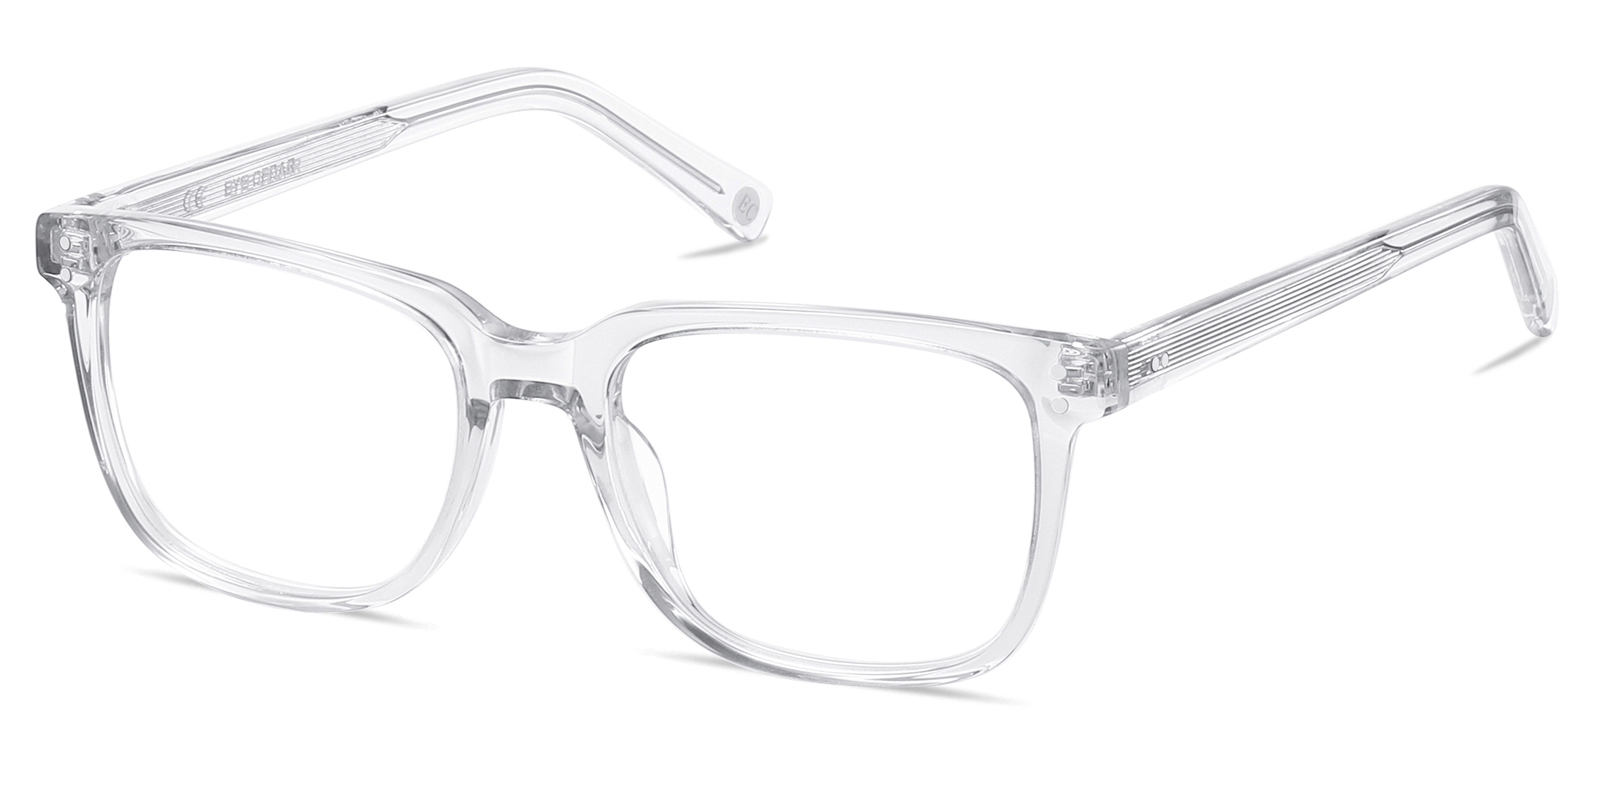 Ogens Reading Glasses for Men and Women Rectangle Clear Eyeglasses Readers